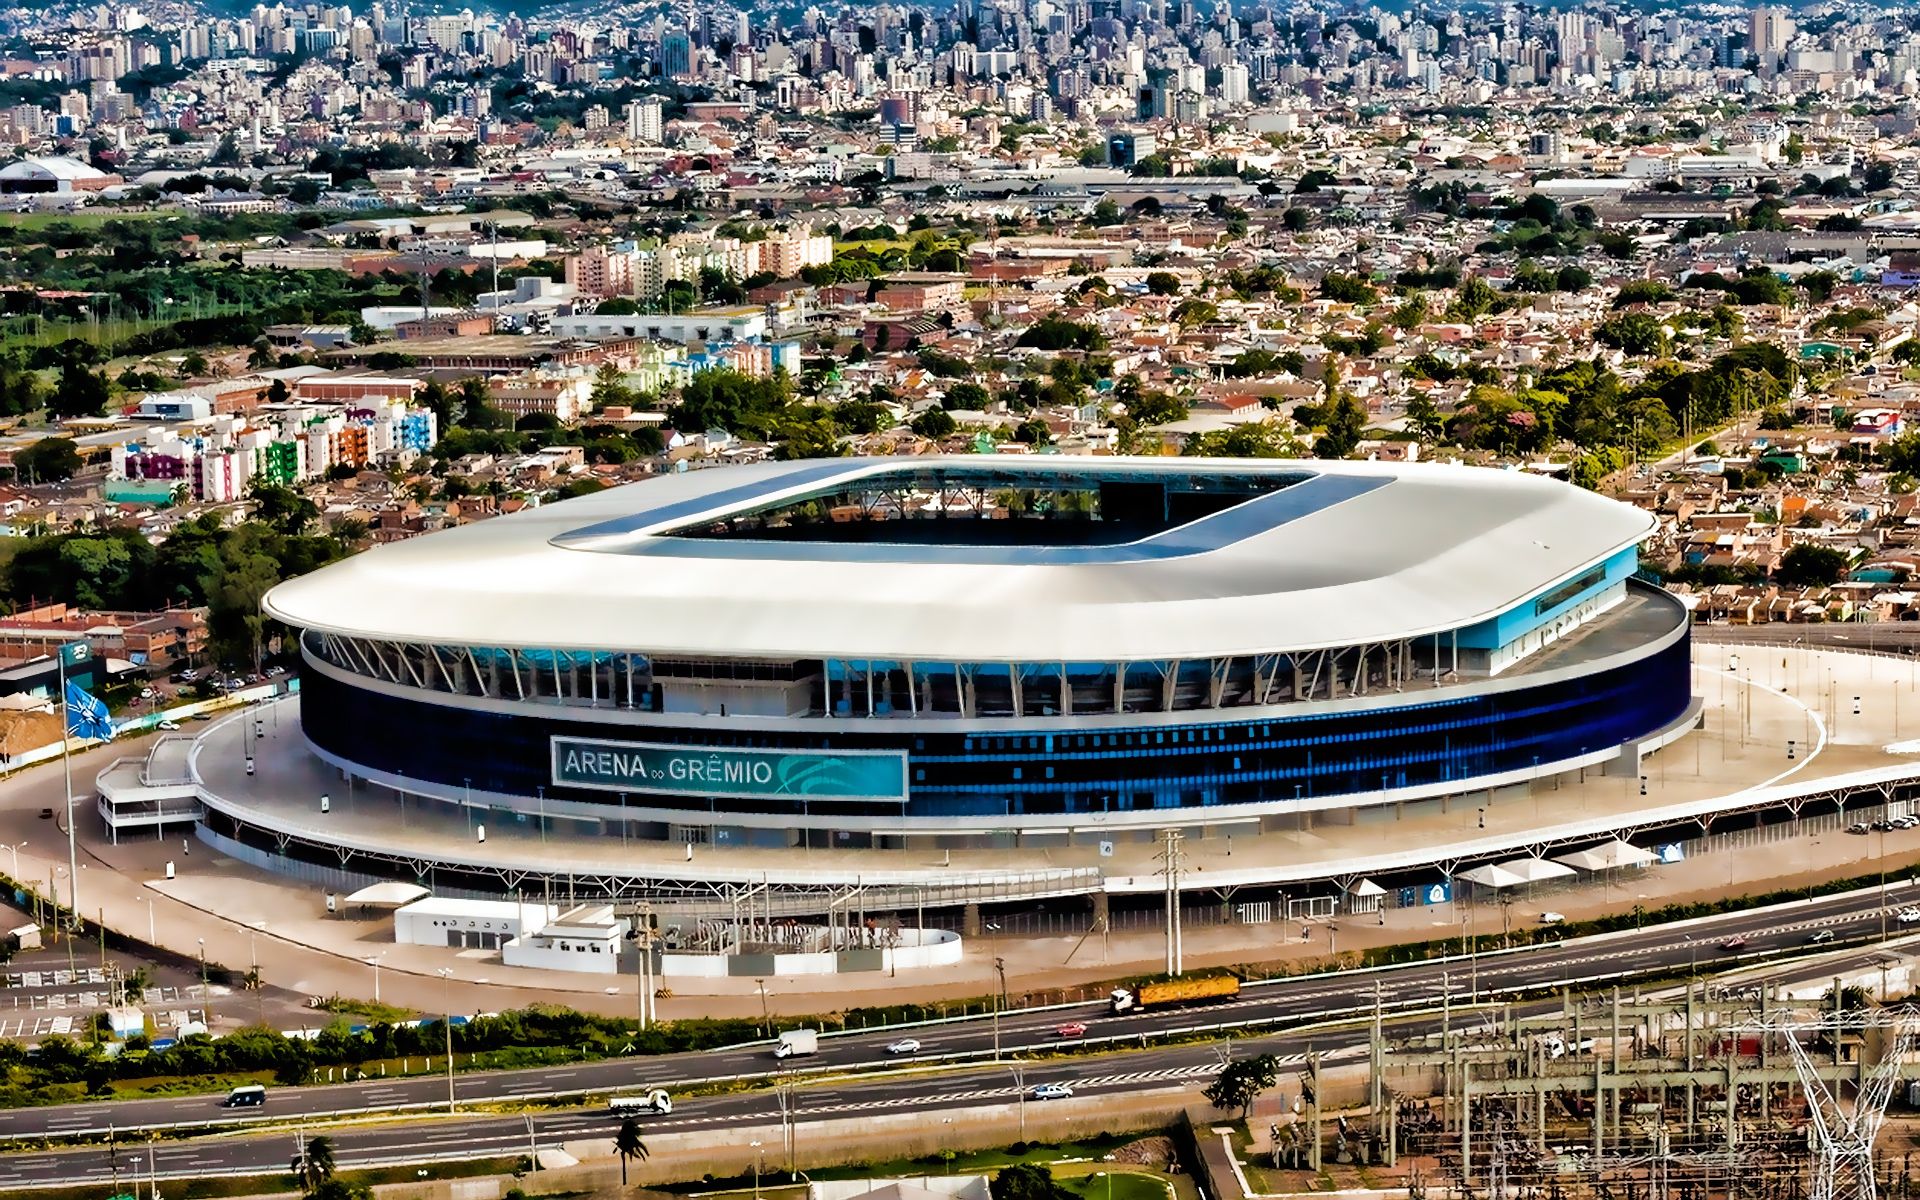 Arena De Gremio in Porto Alegre Brazil